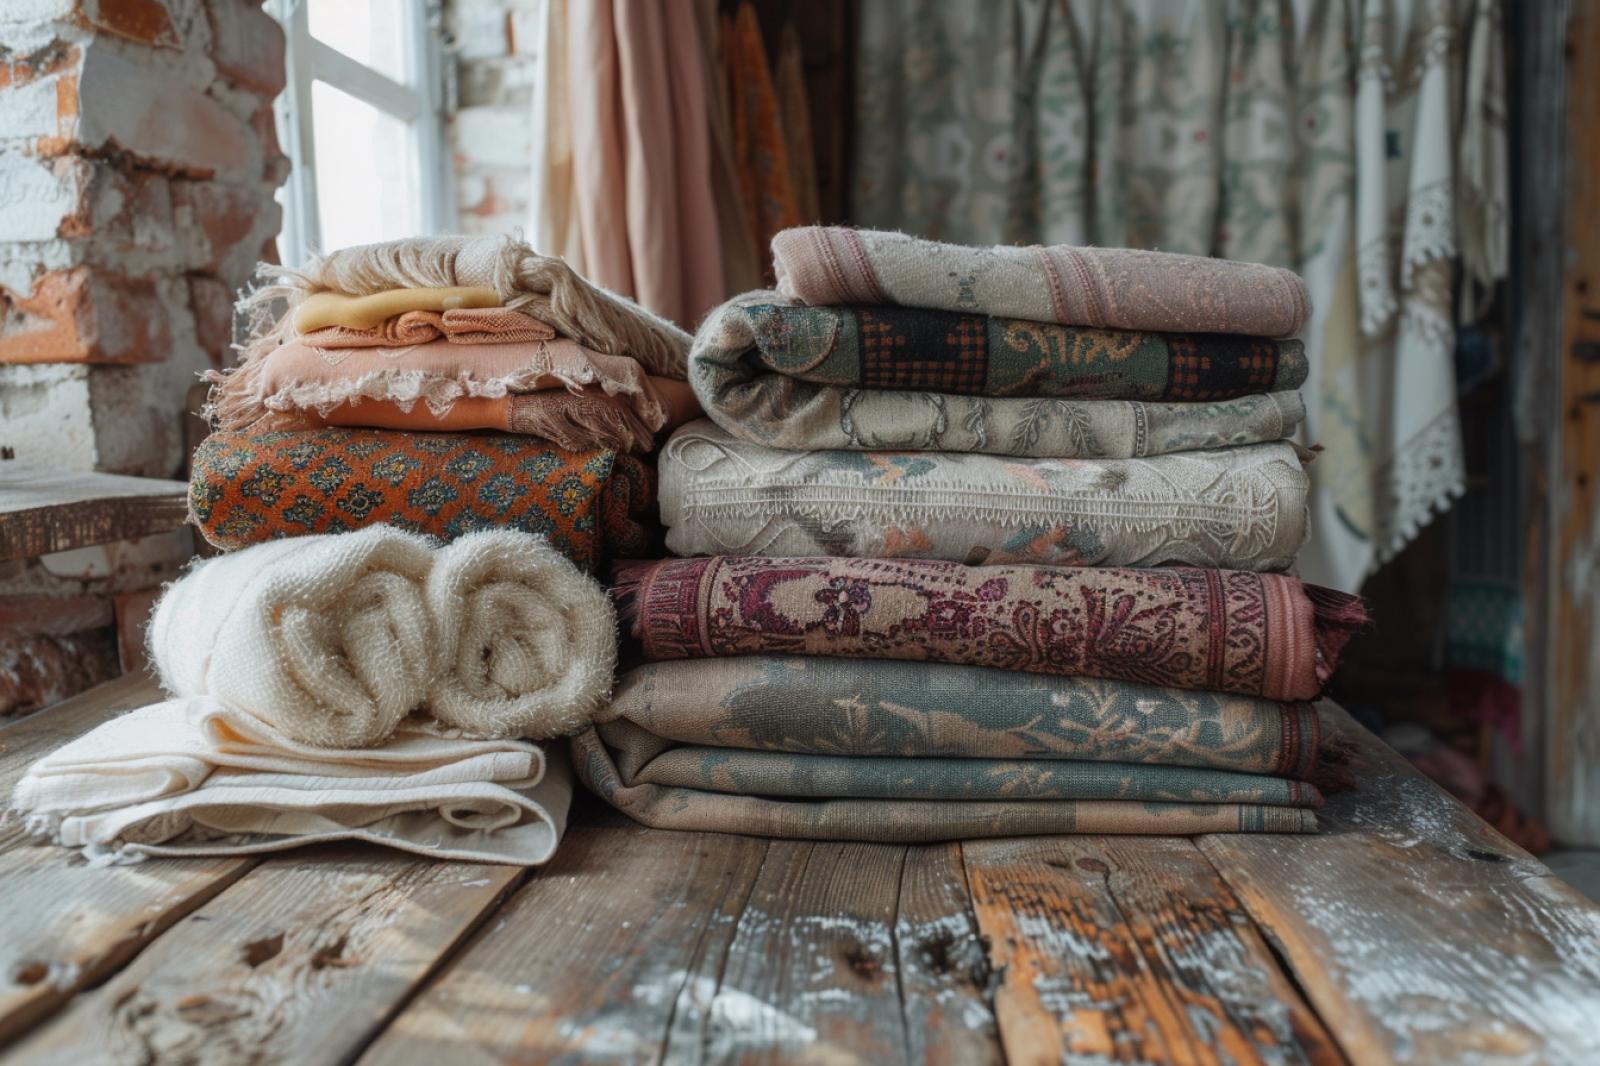 Quels sont les avantages à faire valoriser et recycler ses vieux textiles ?